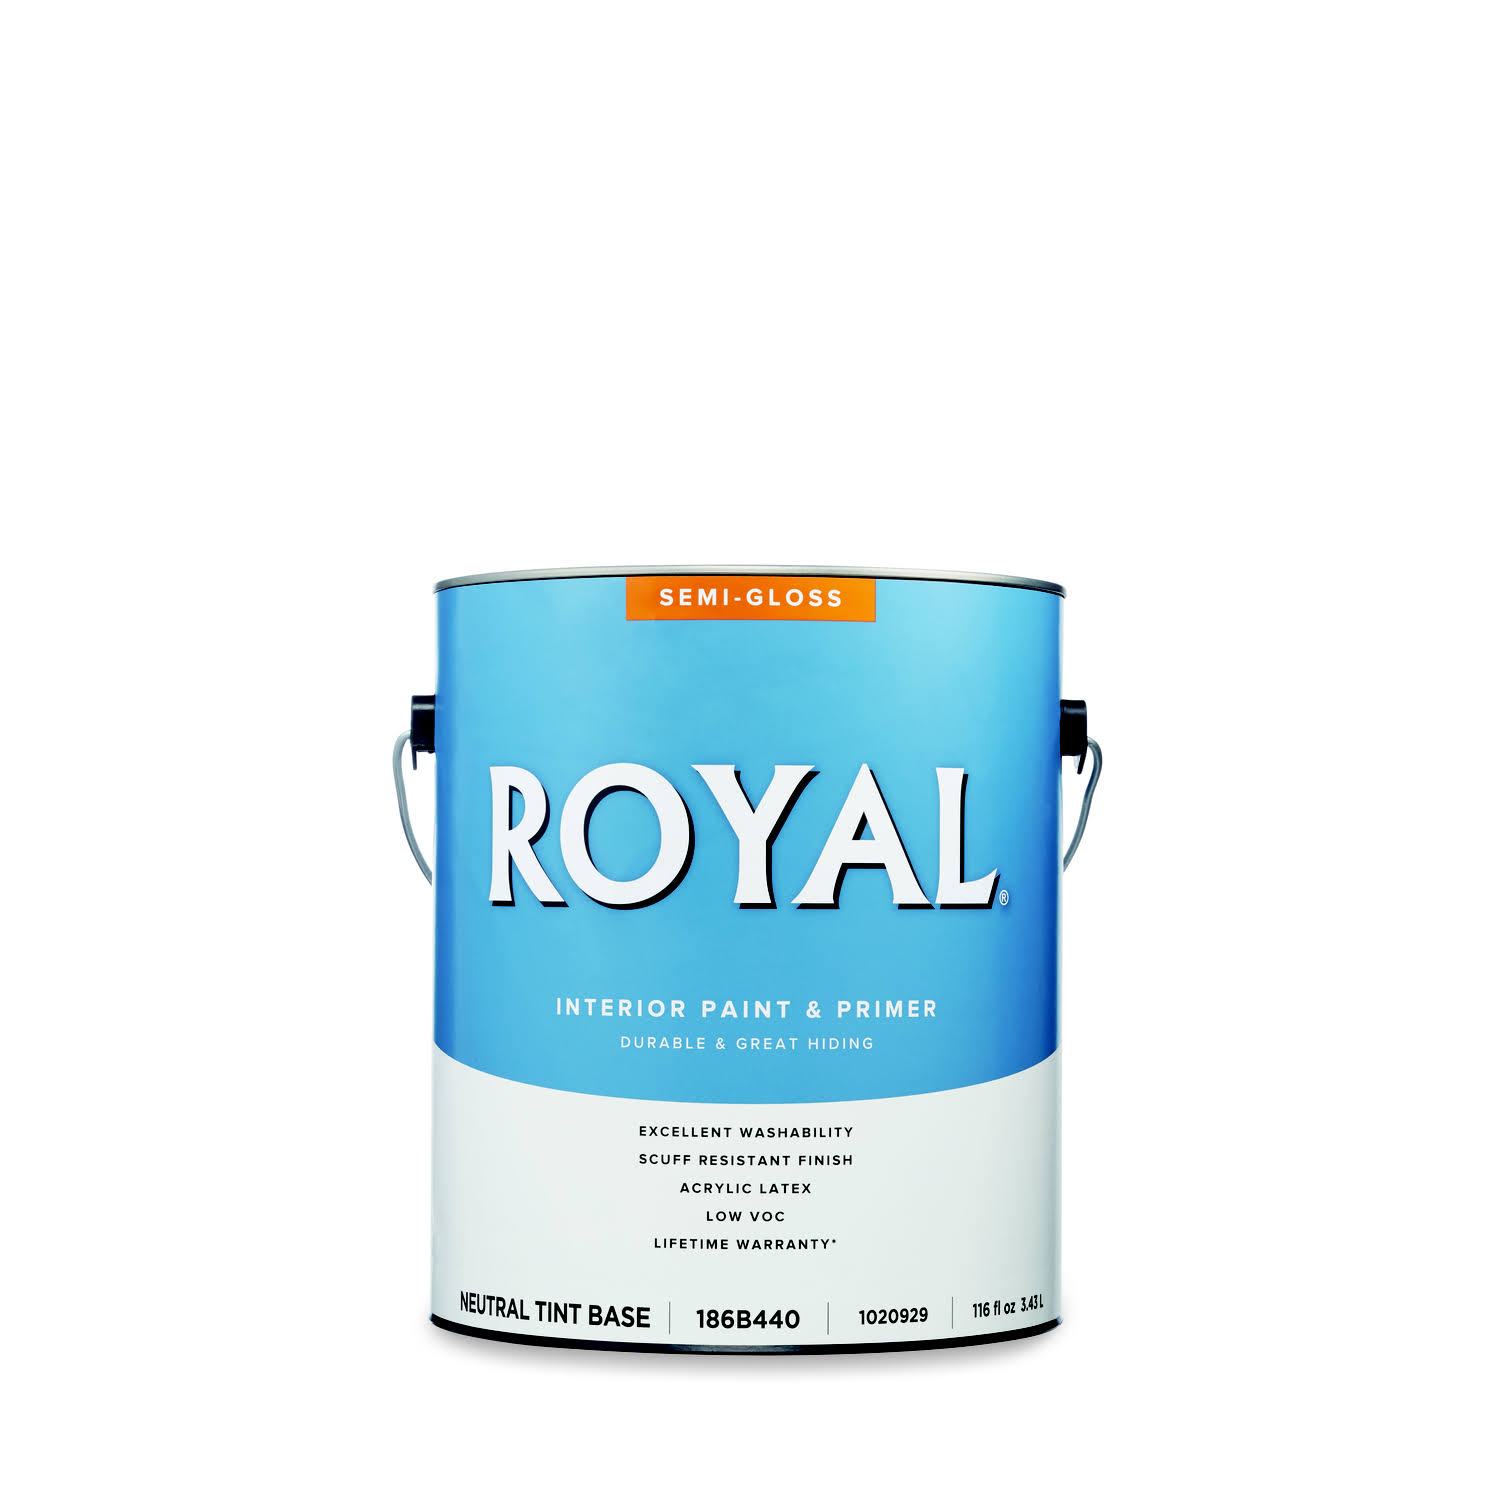 Royal Semi-Gloss Tint Base Neutral Base Paint Interior 1 gal.